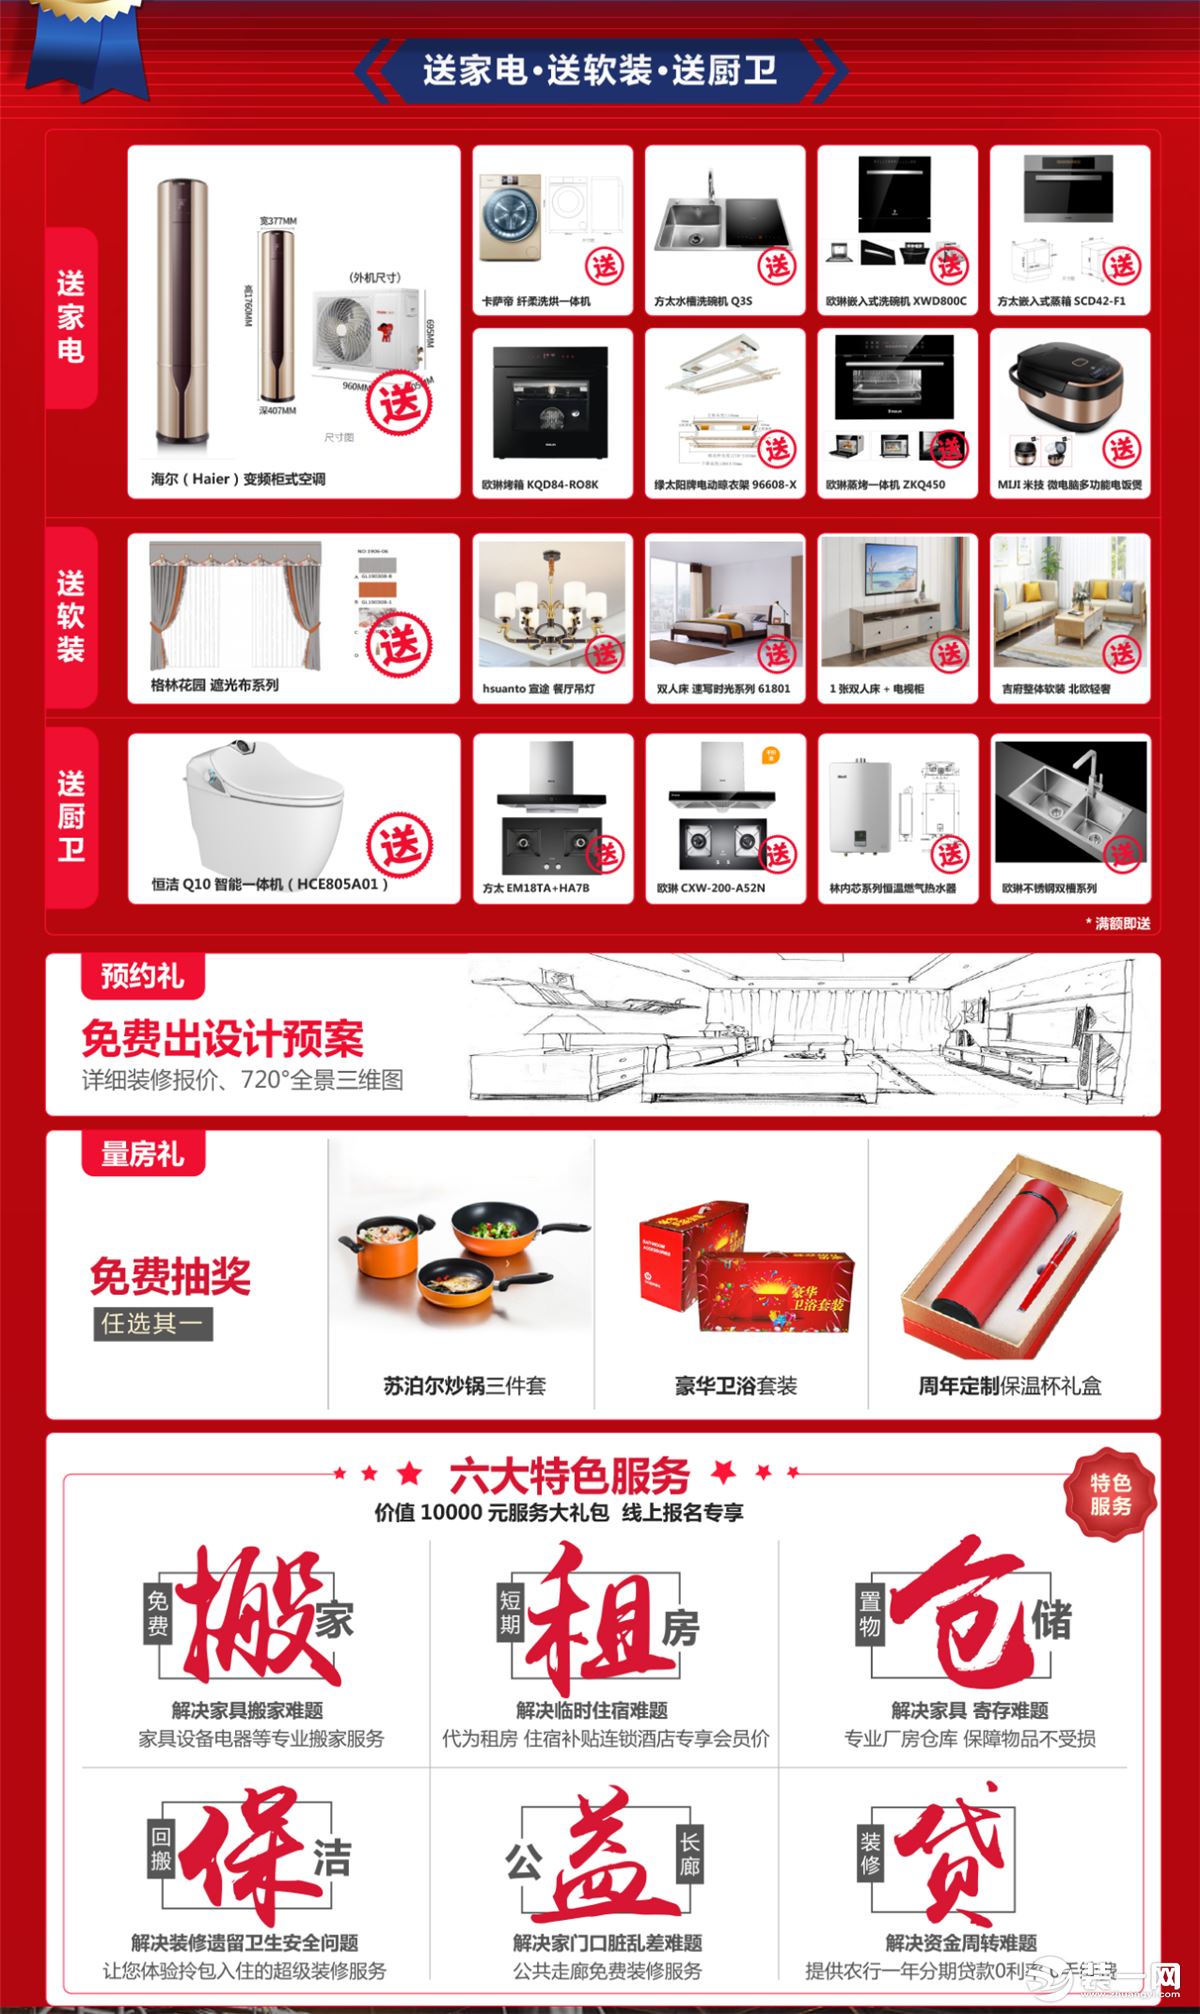 上海红蚂蚁装饰公司装修博览会活动